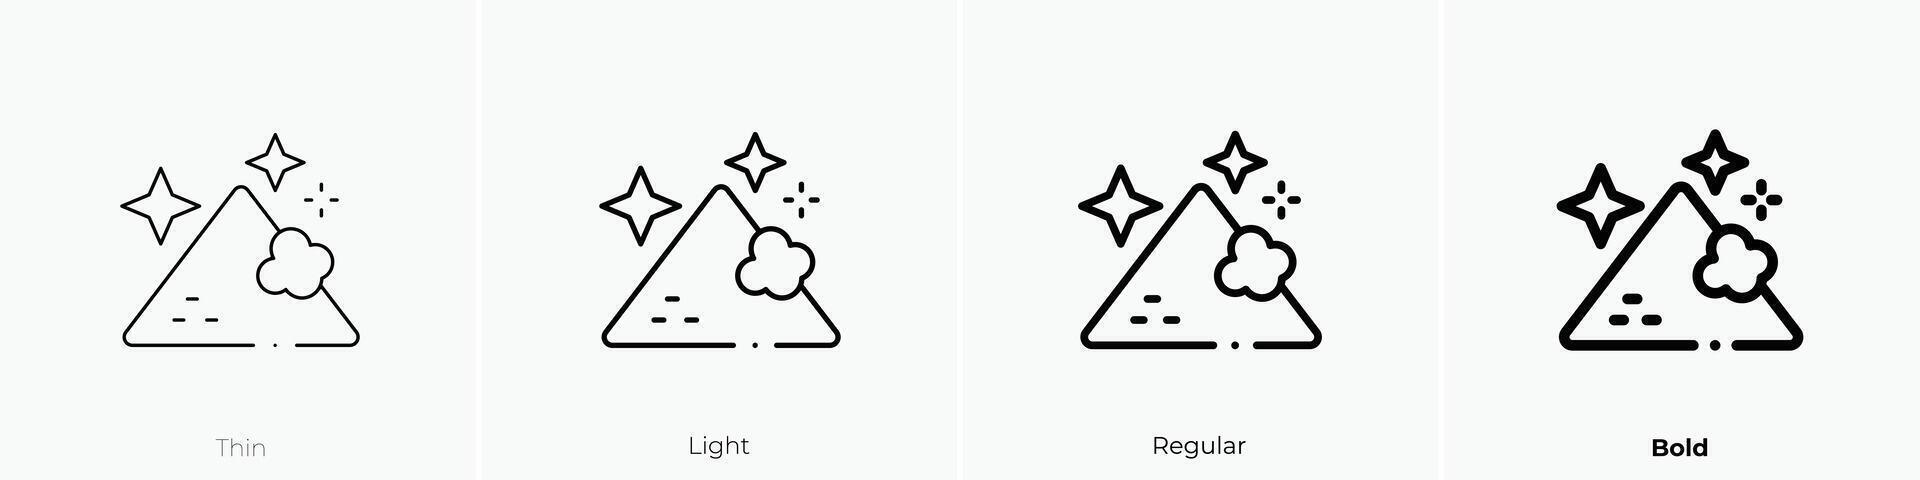 Magie Staub Symbol. dünn, Licht, regulär und Fett gedruckt Stil Design isoliert auf Weiß Hintergrund vektor